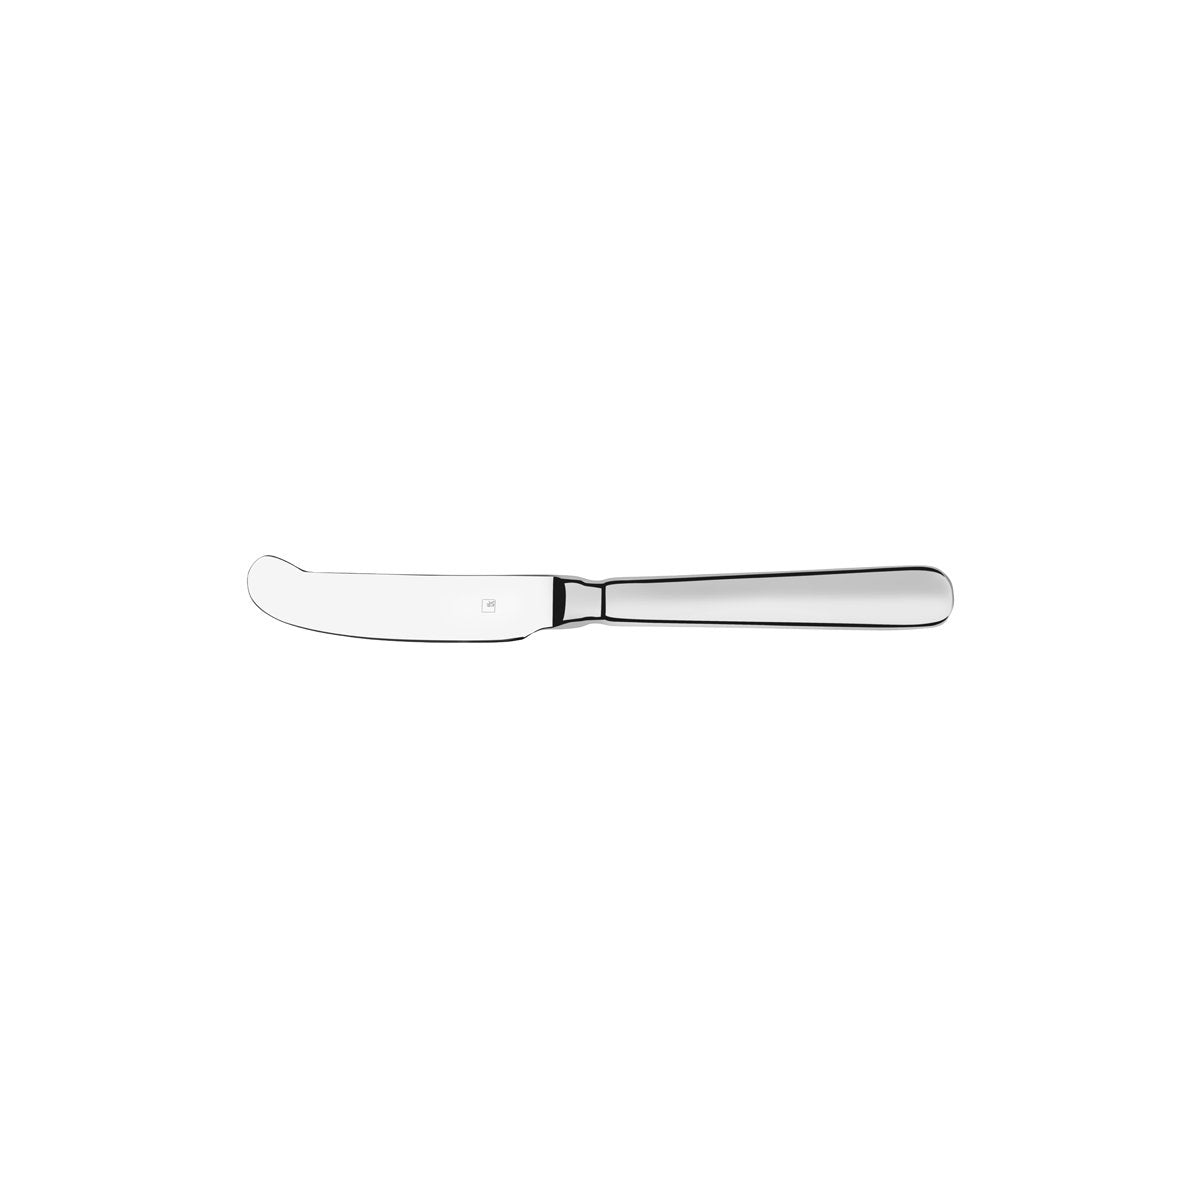 18580 Tablekraft Bogart Butter Knife H/H Tomkin Australia Hospitality Supplies